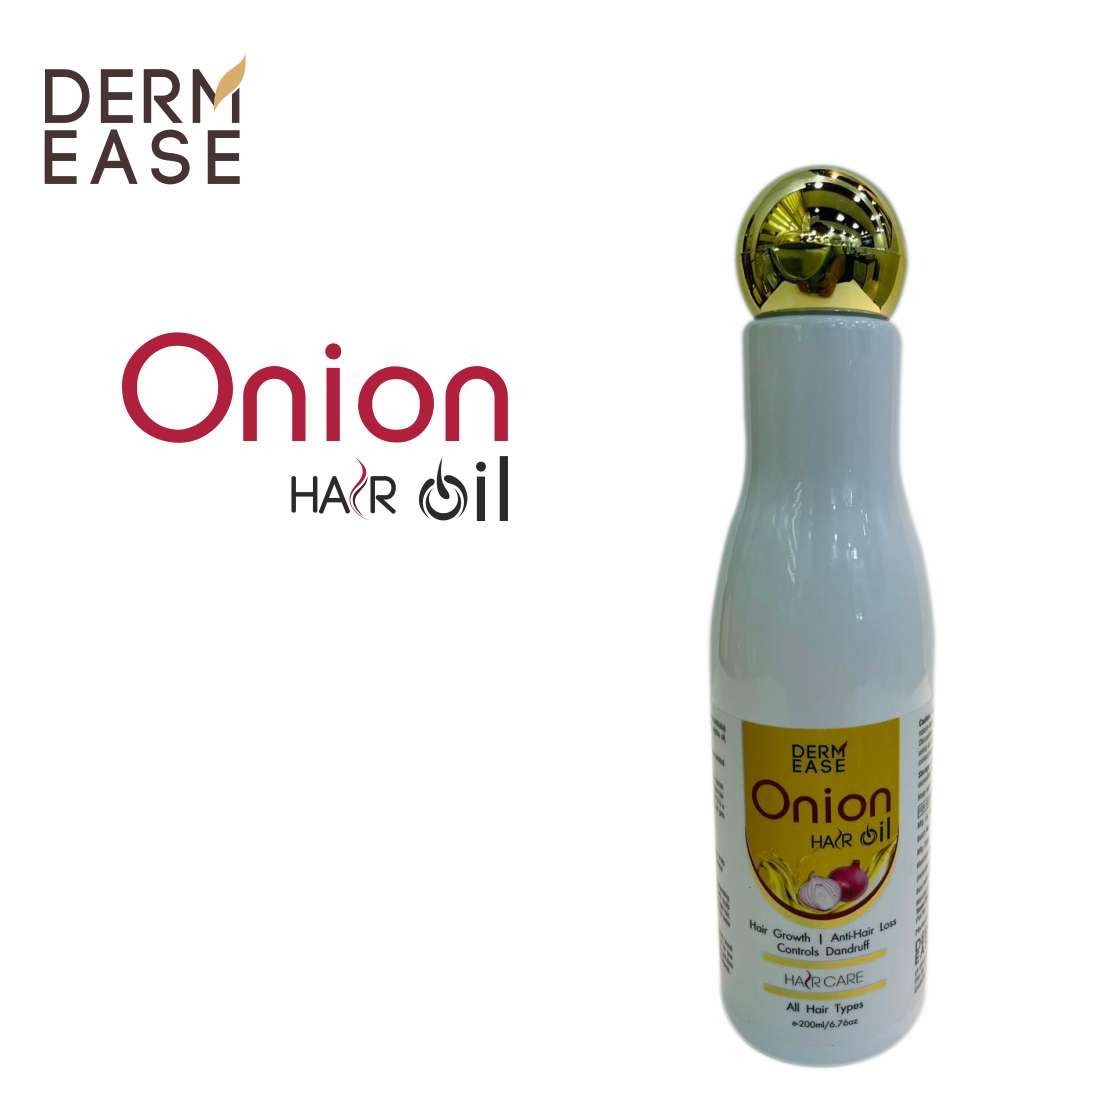 DERM EASE Onion Hair Oil